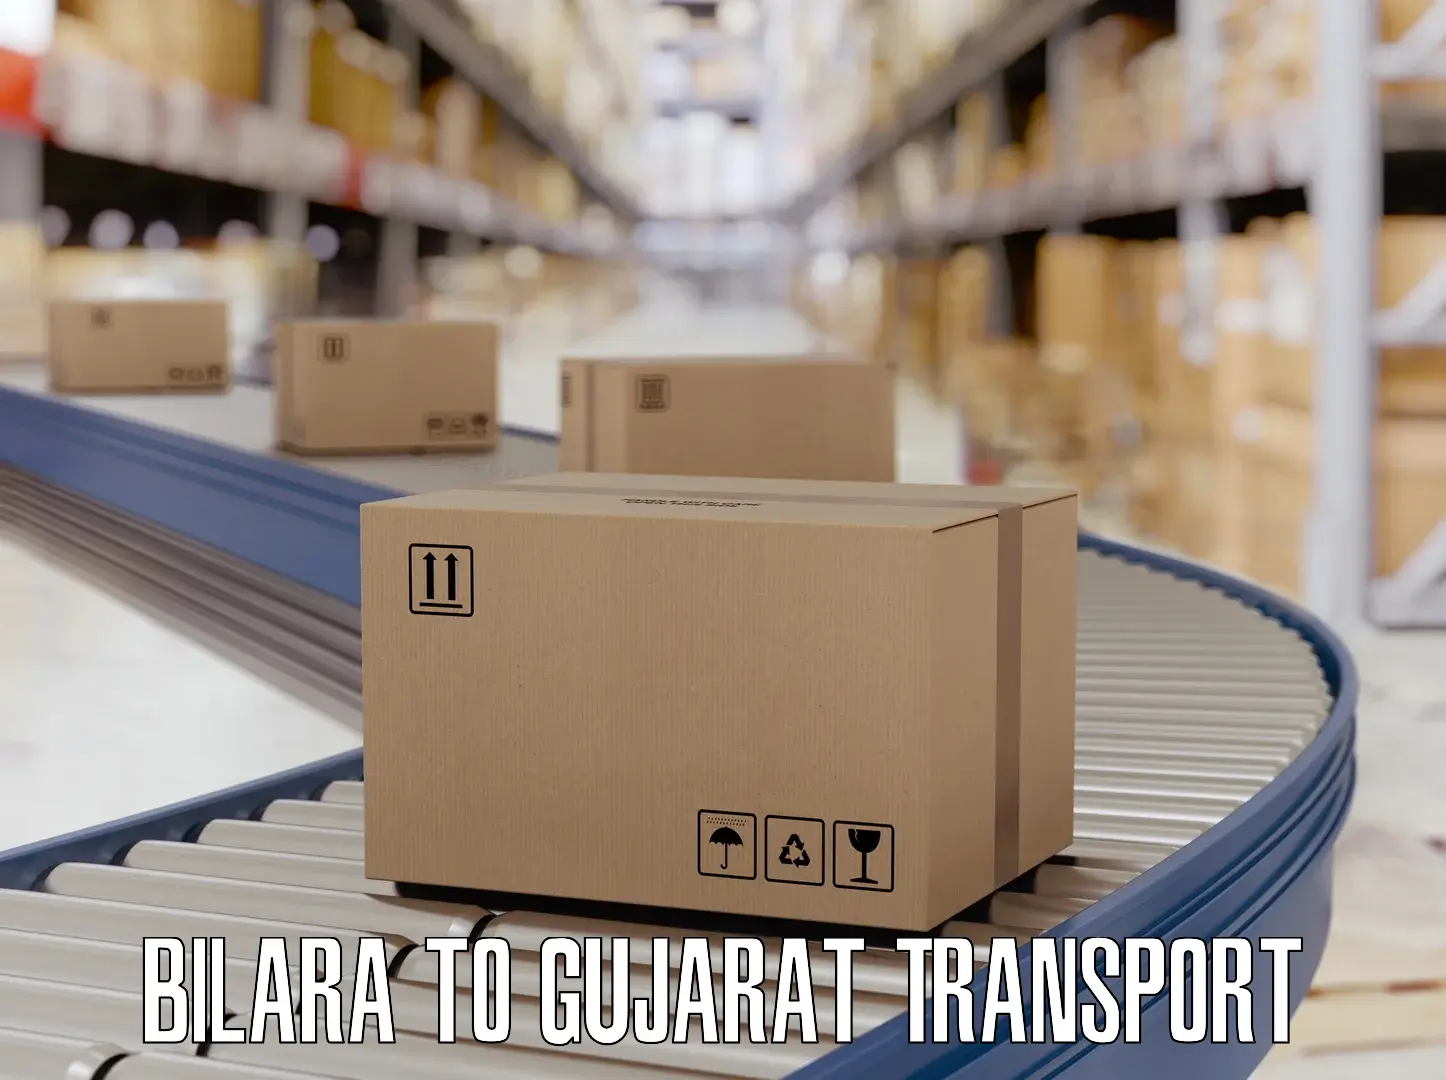 Online transport booking Bilara to Patan Gujarat